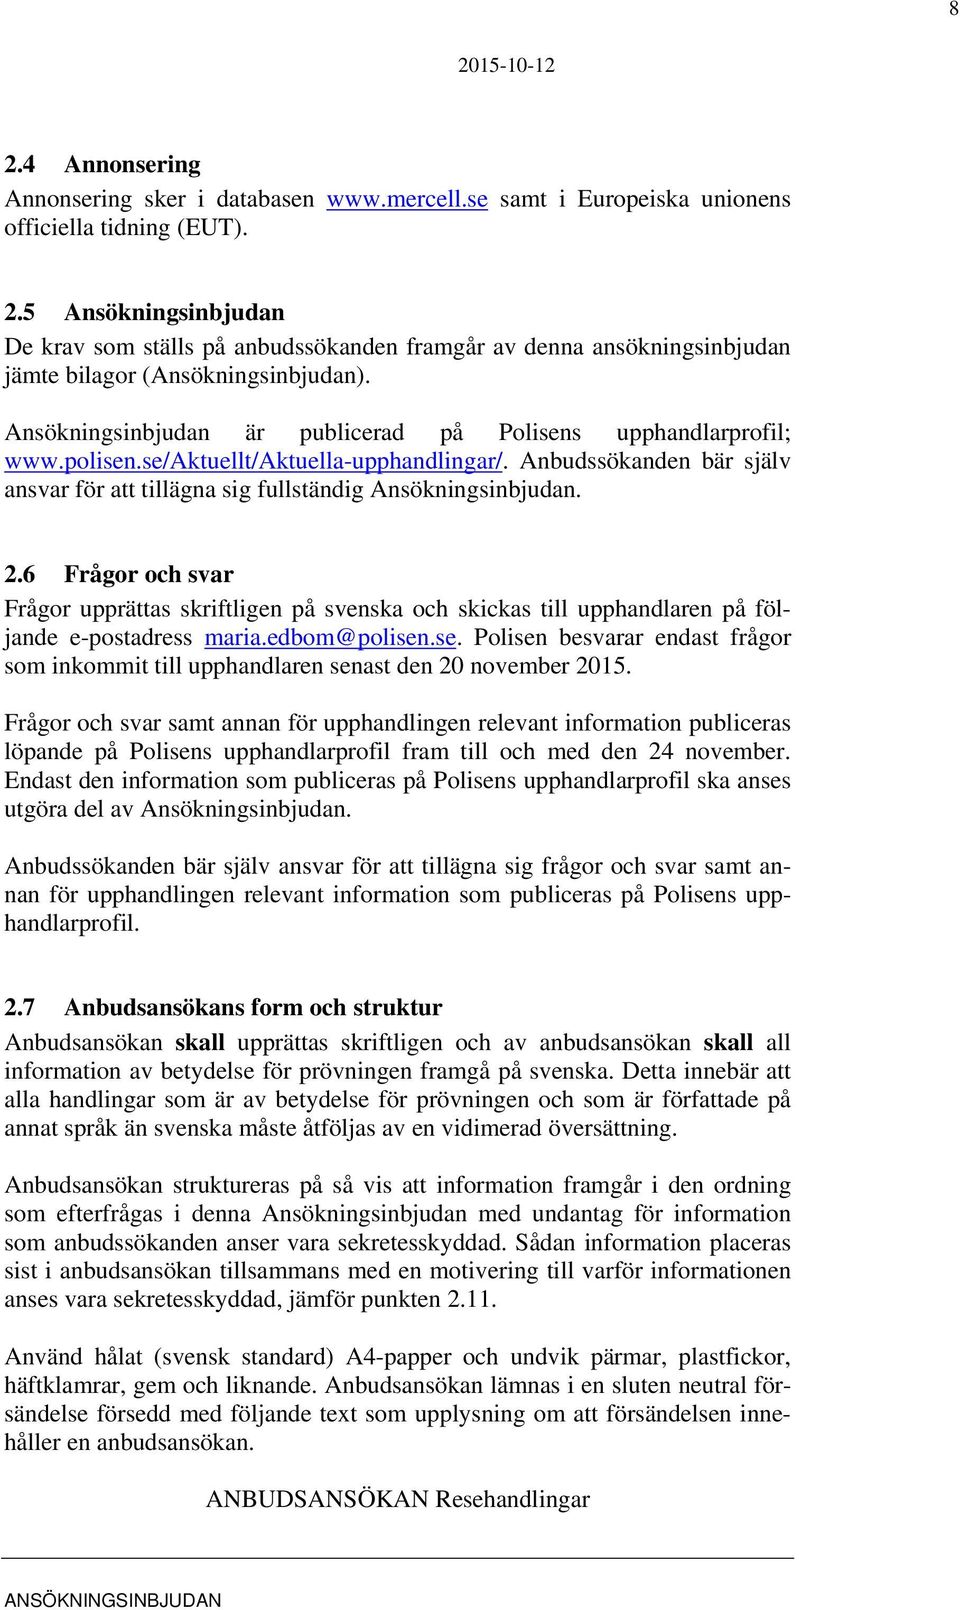 6 Frågor och svar Frågor upprättas skriftligen på svenska och skickas till upphandlaren på följande e-postadress maria.edbom@polisen